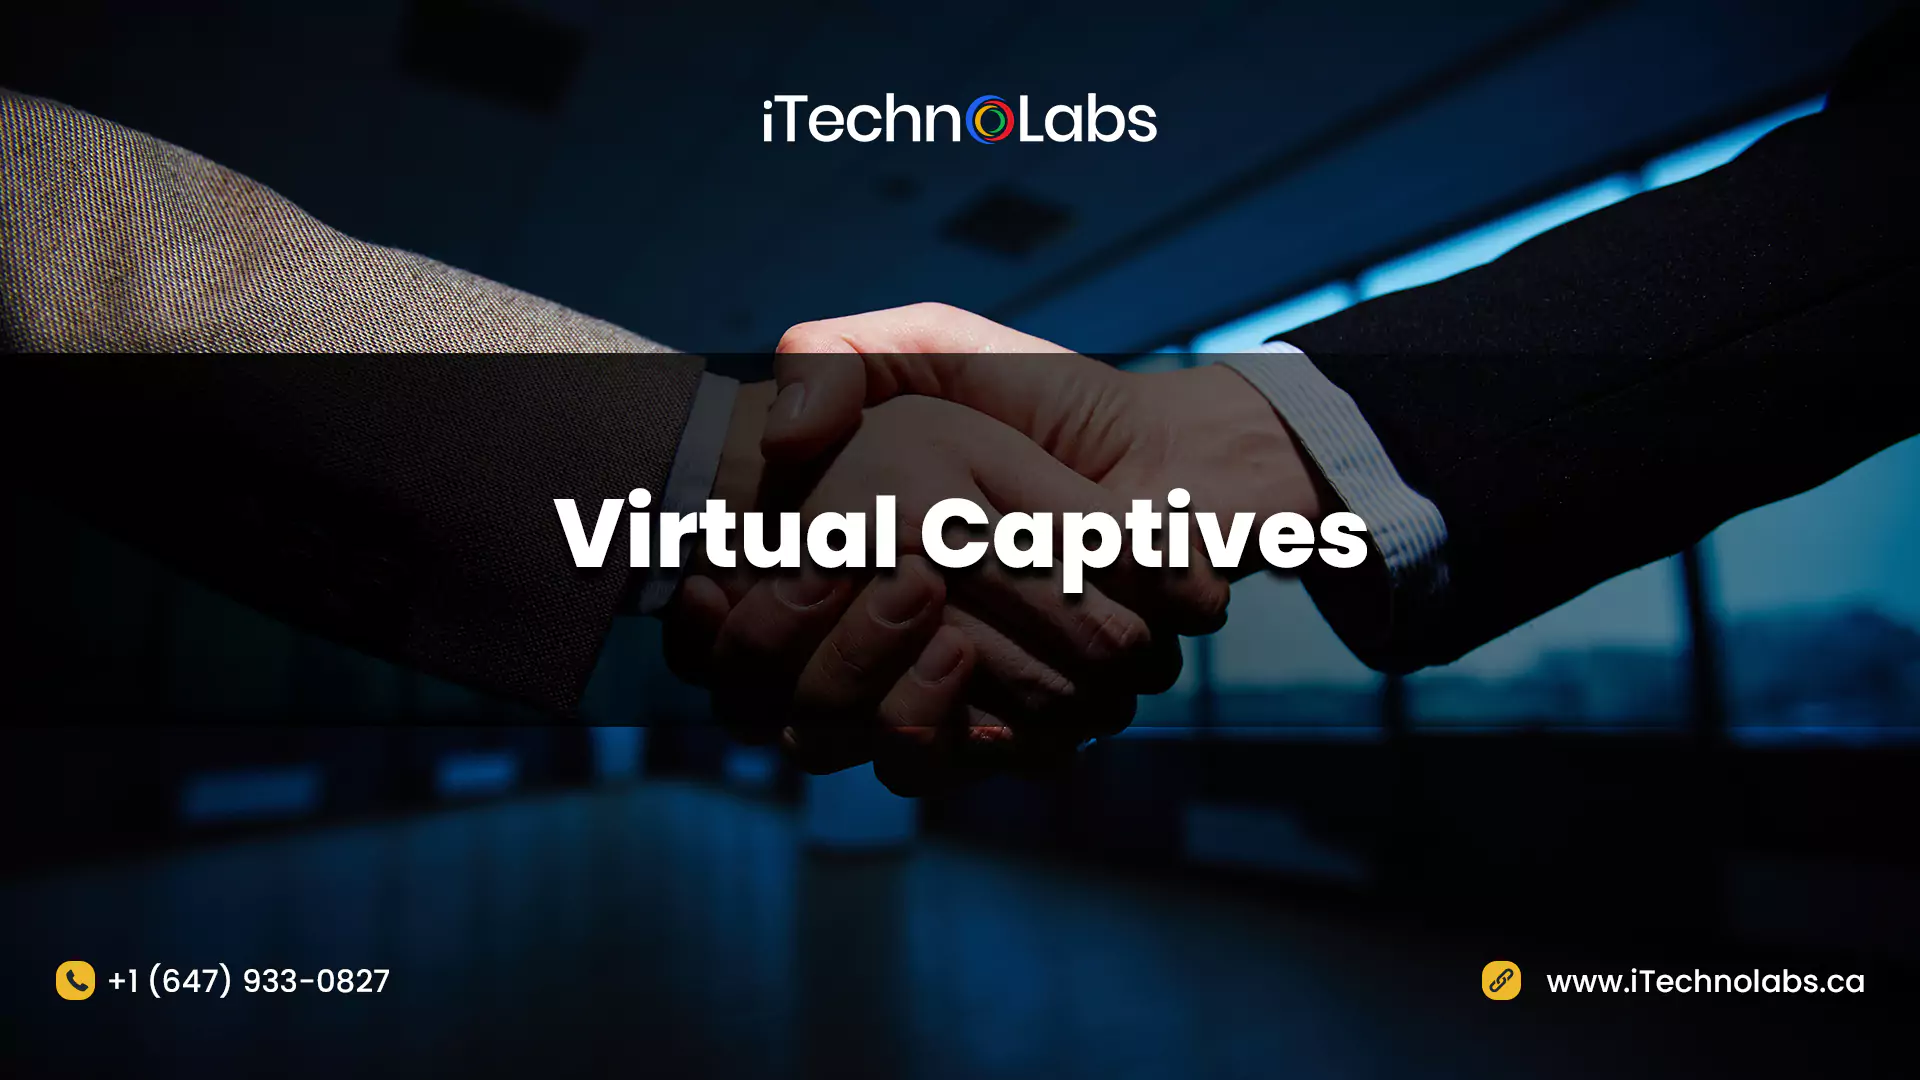 Virtual Captives itechnolabs